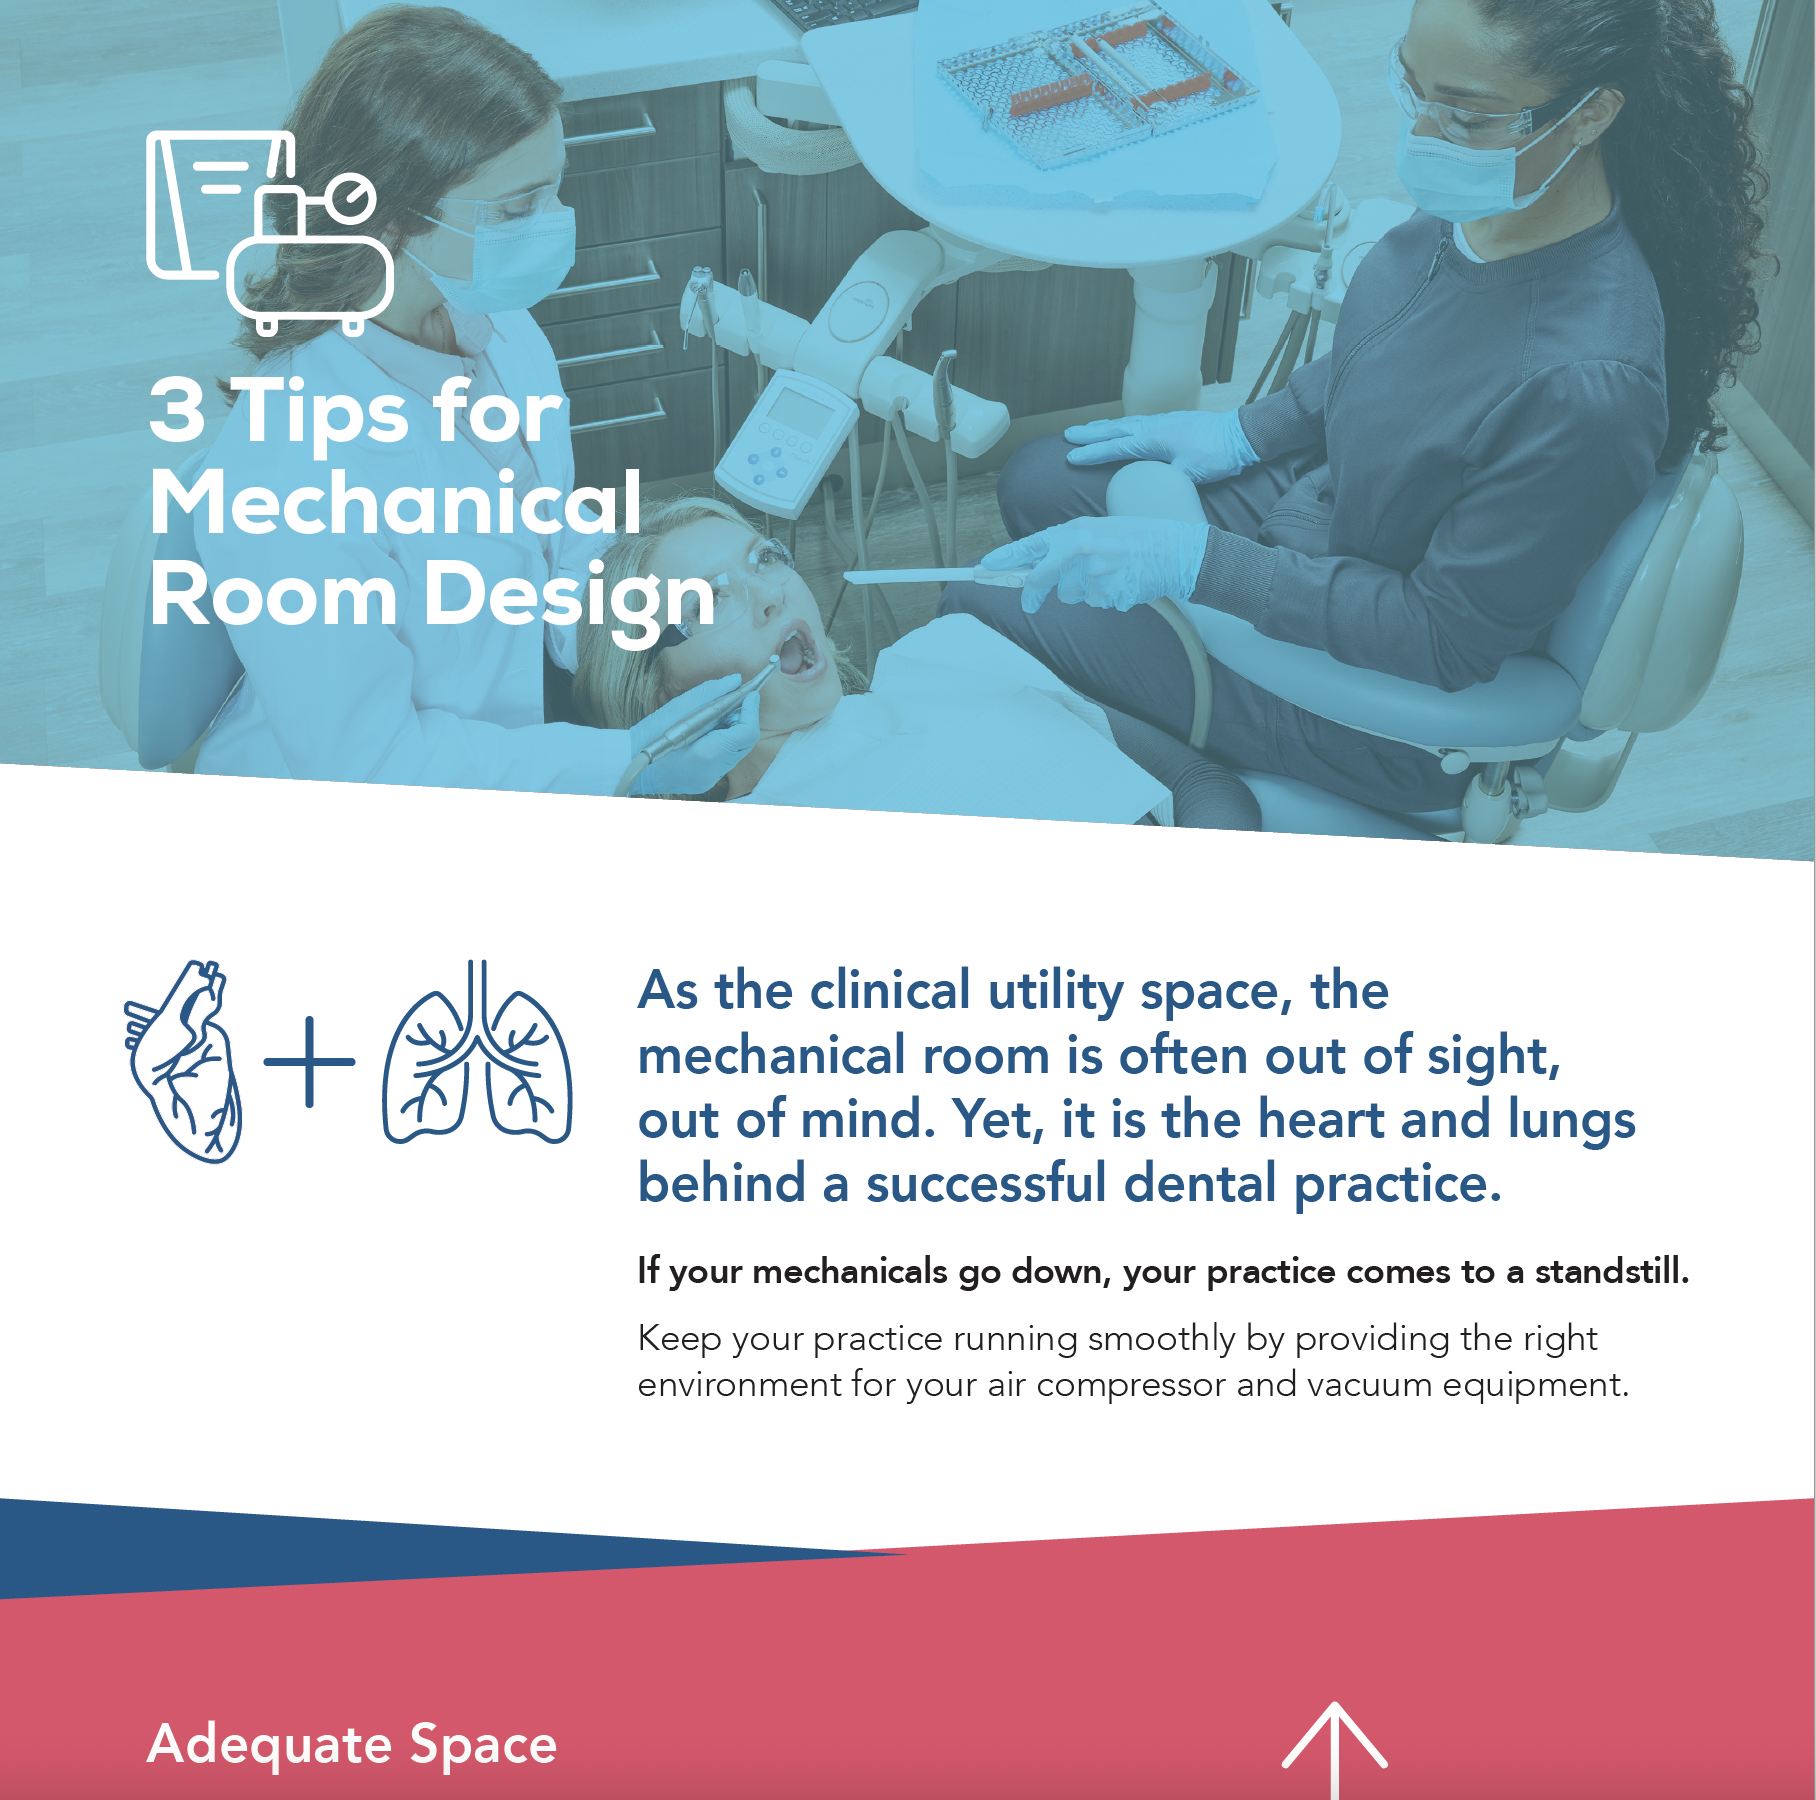 3 Tips for Mechanical Room Design